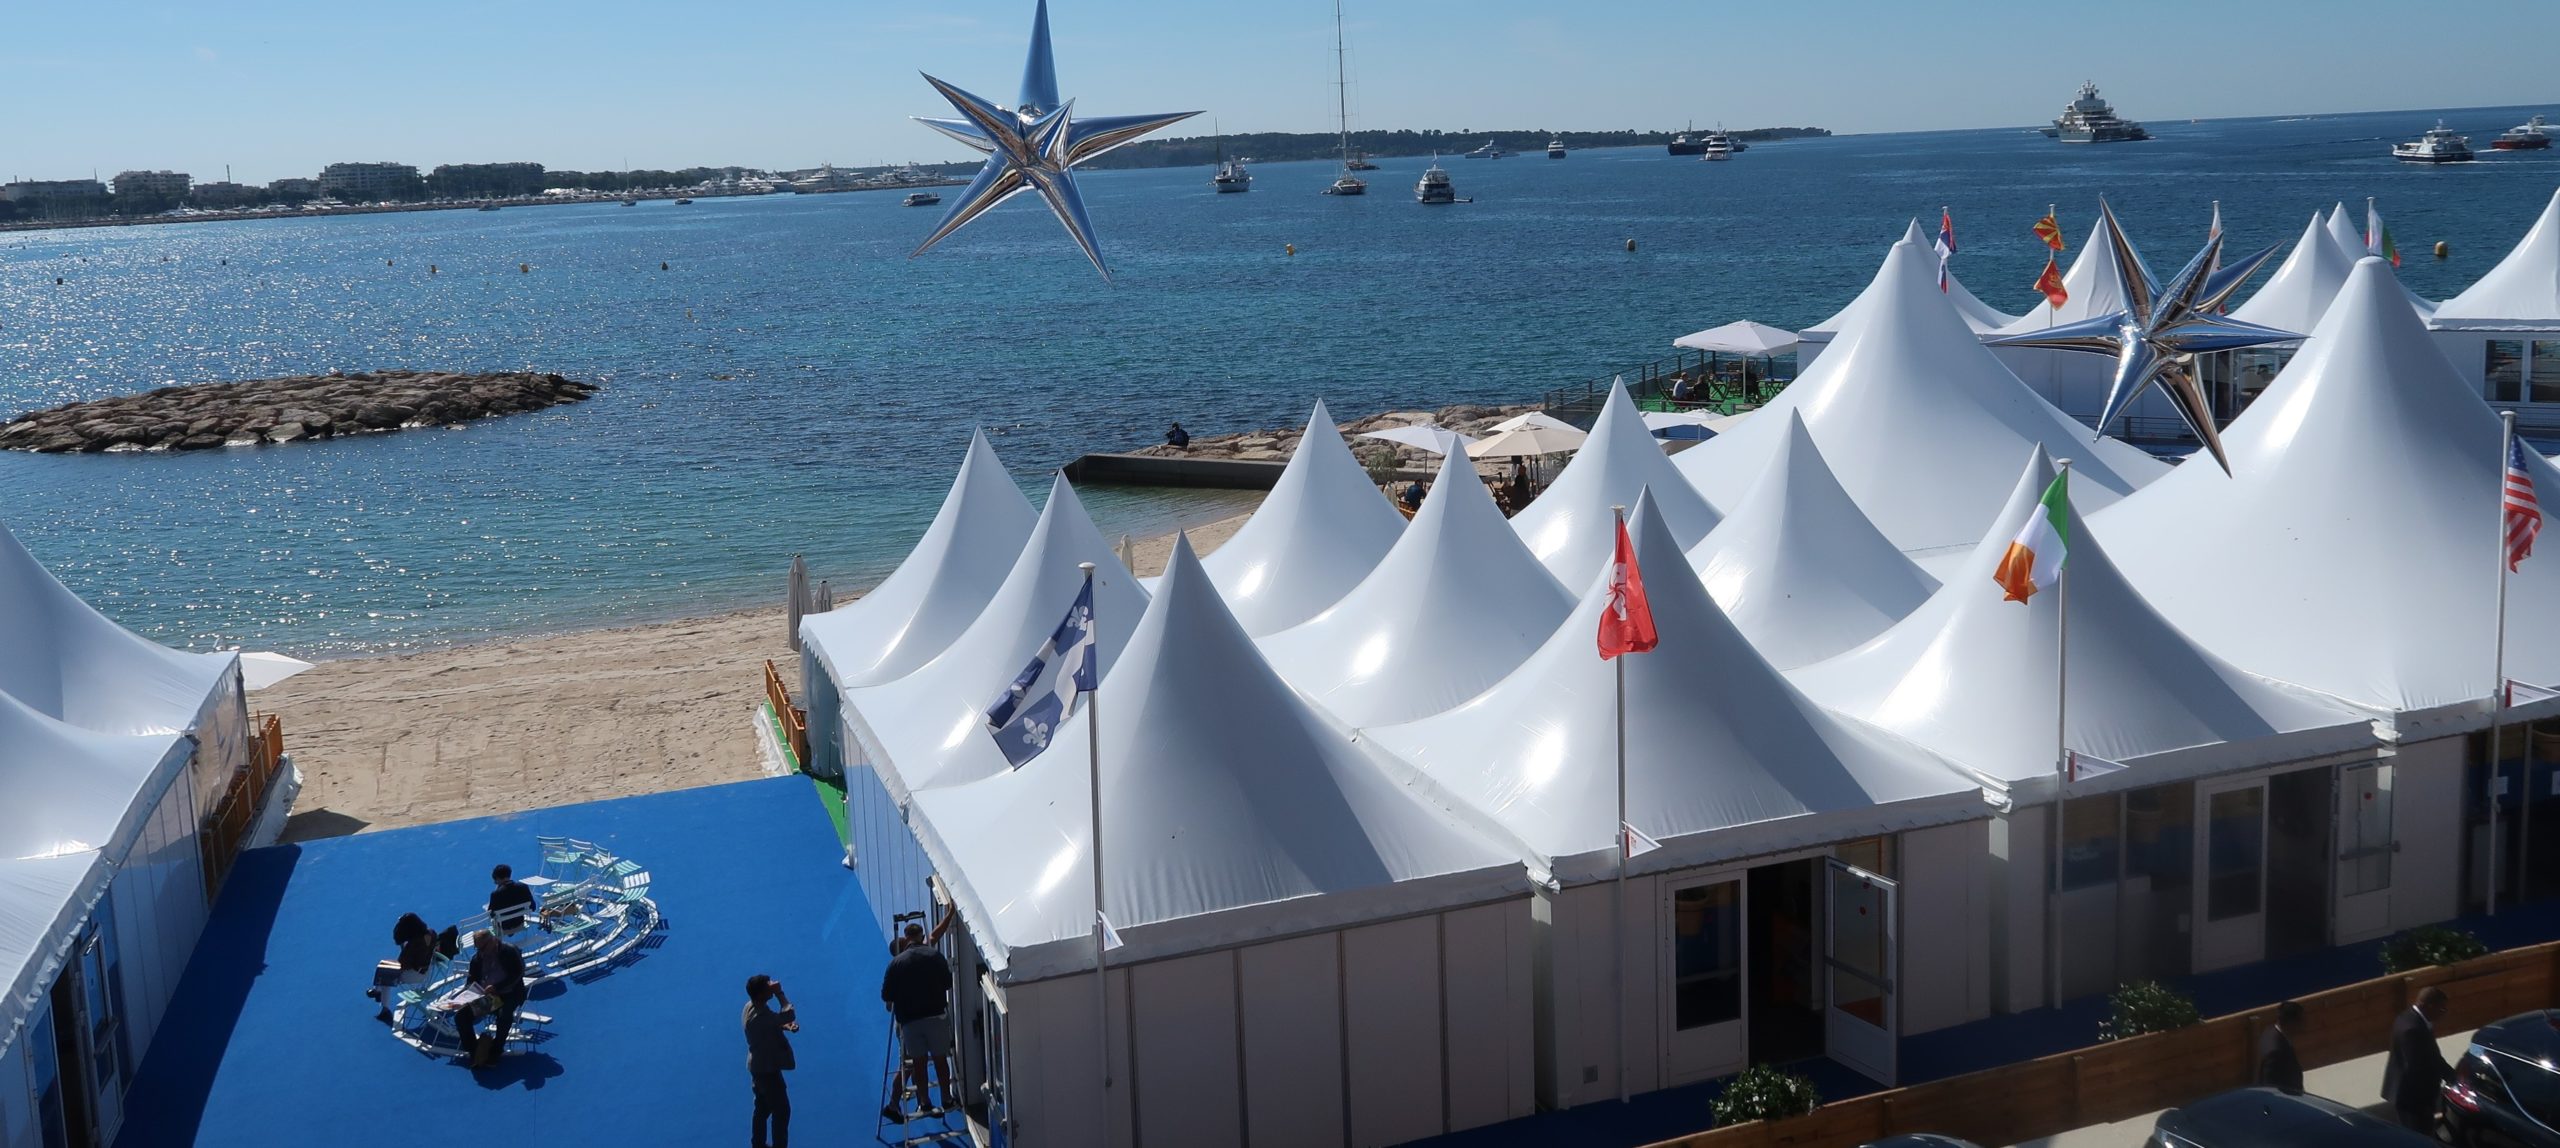 Festival de Cannes 2019